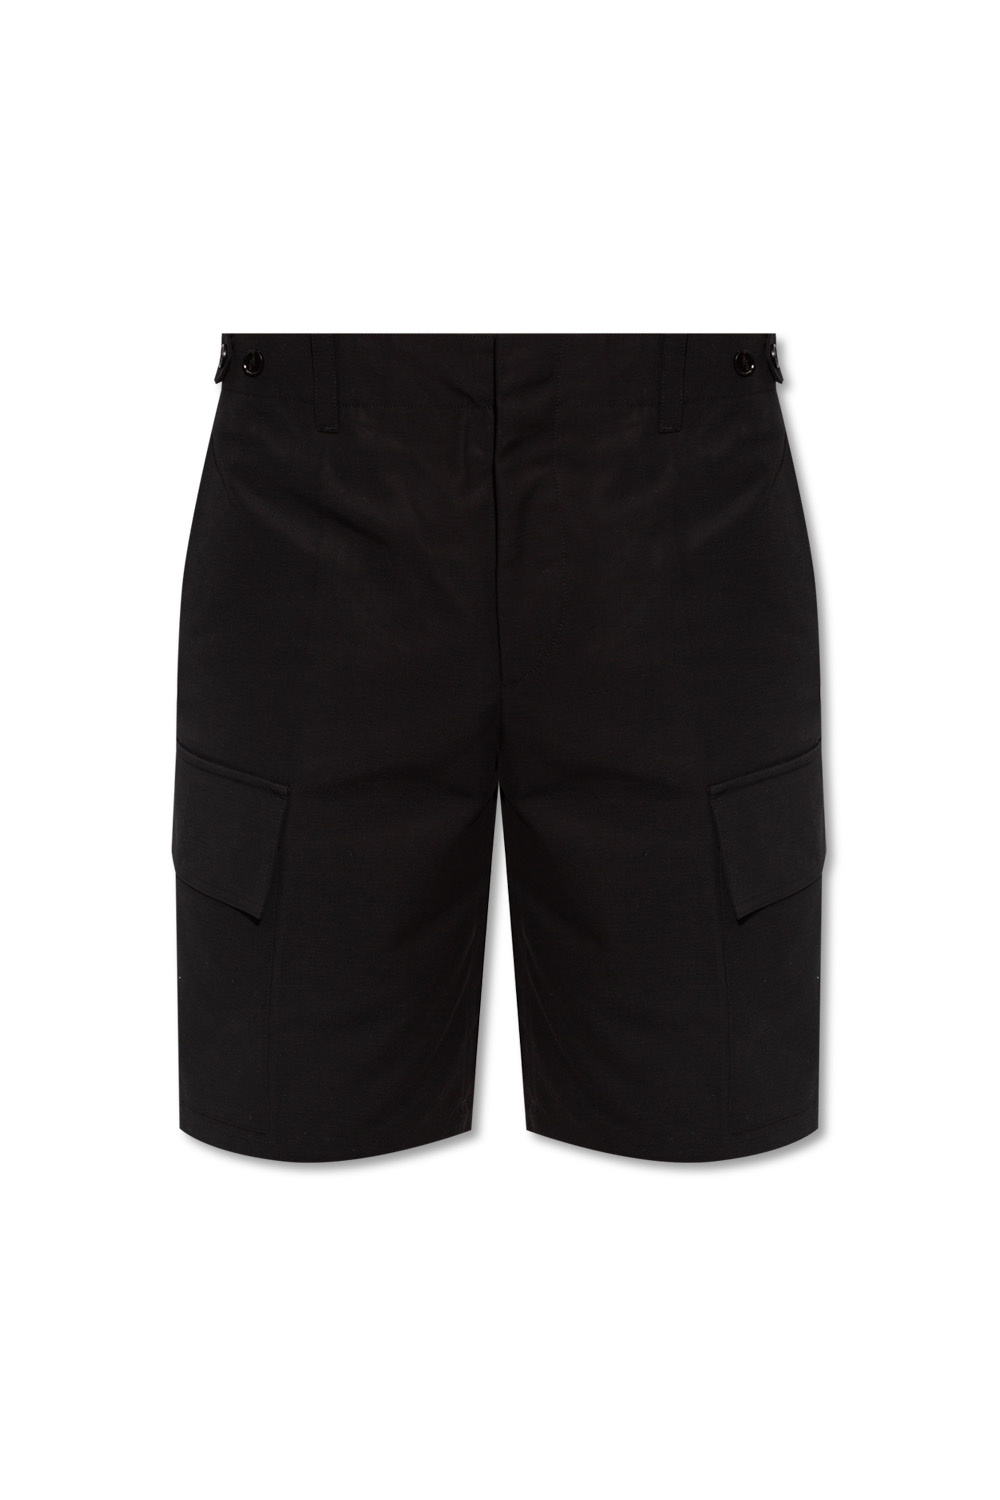 JIL SANDER Cargo shorts